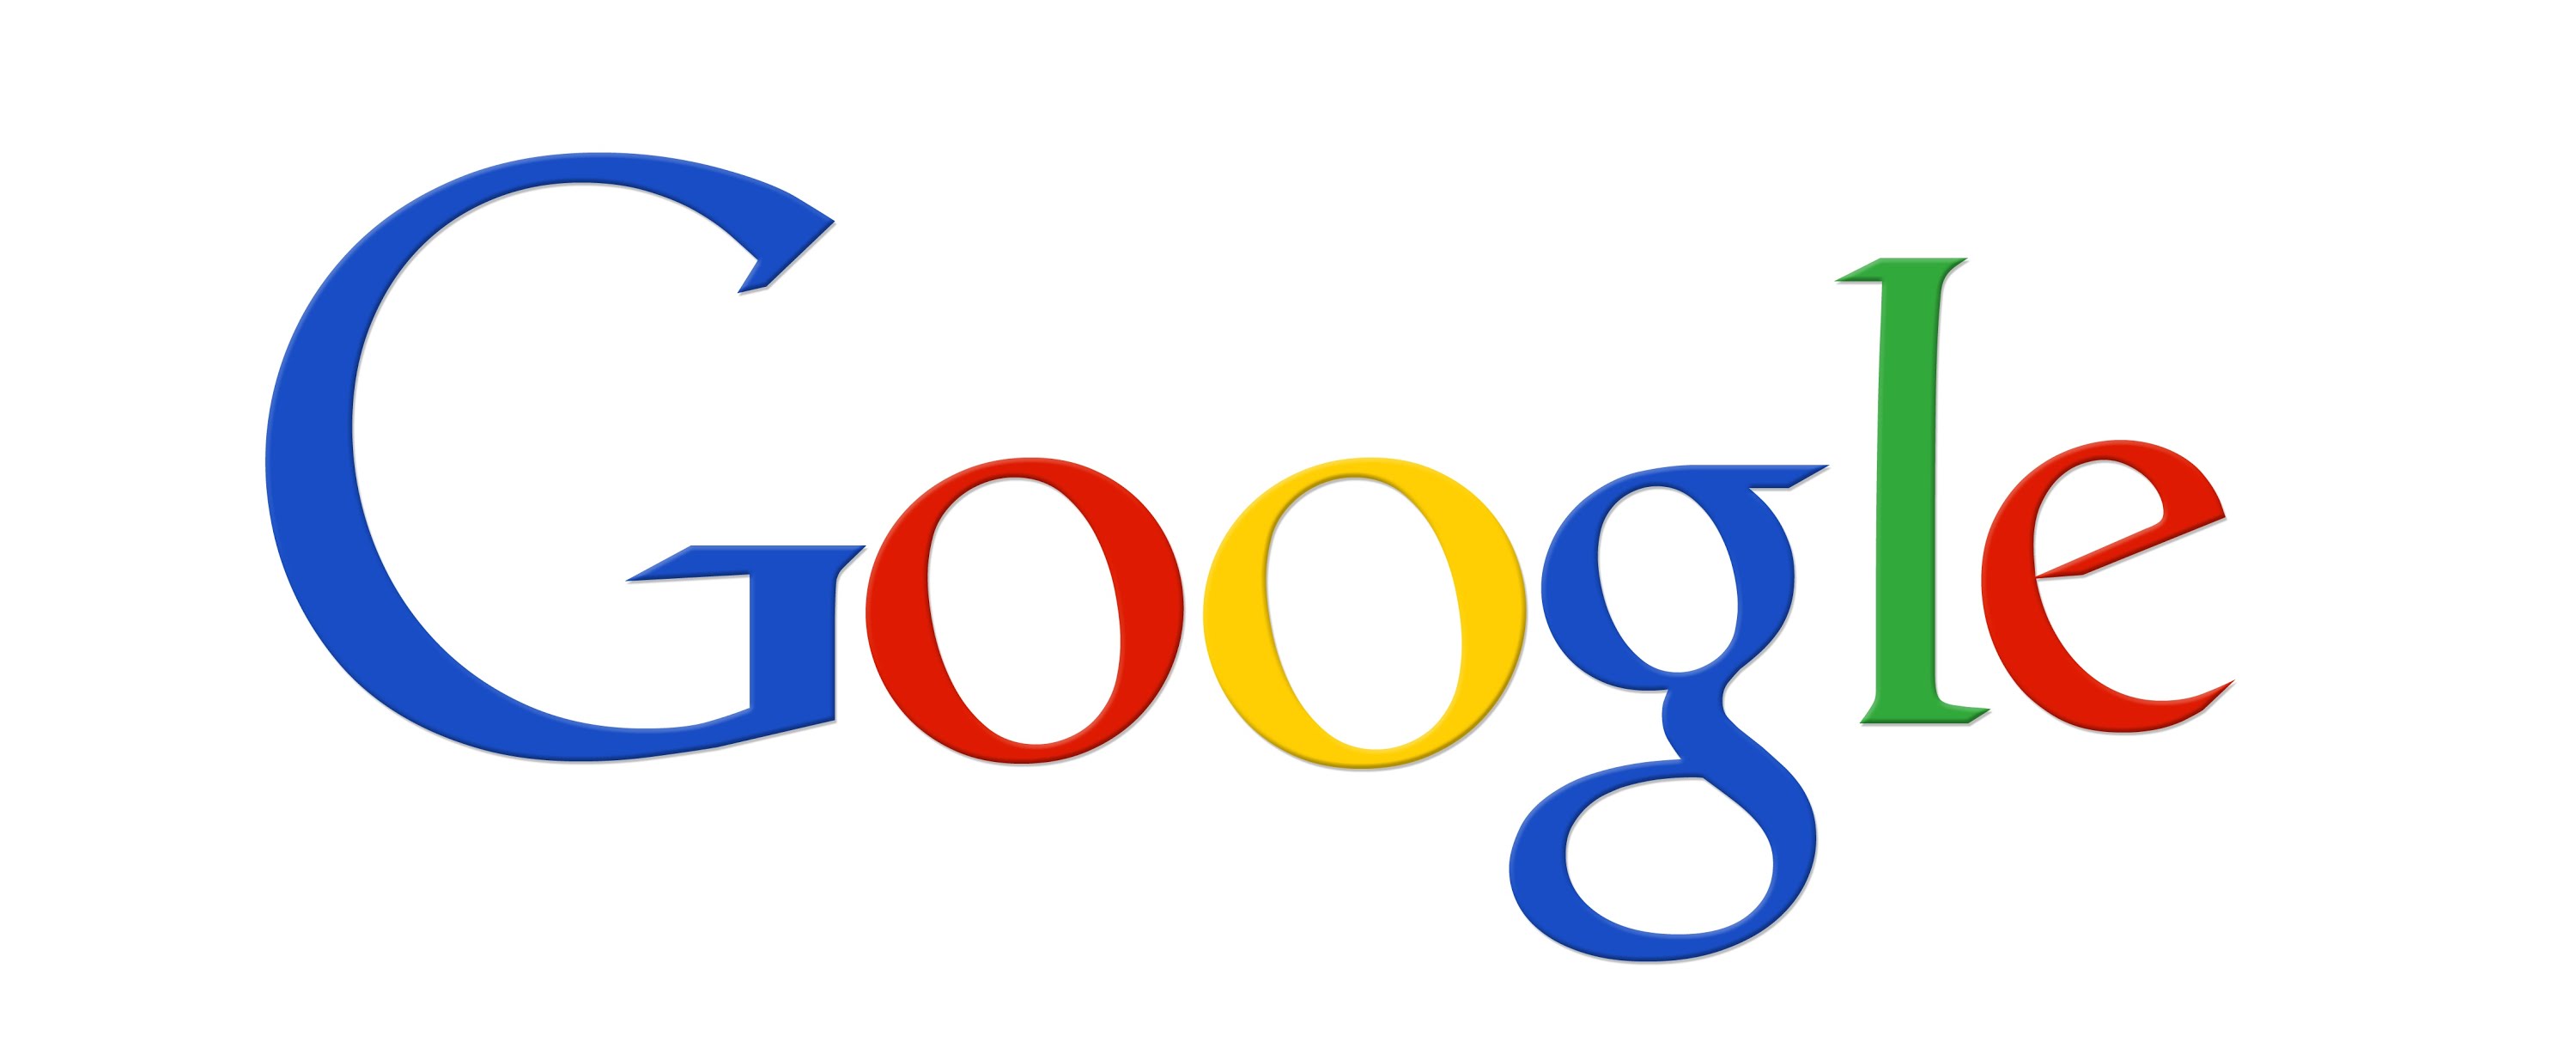 Google+ закроют из-за частых утечек и низкой популярности